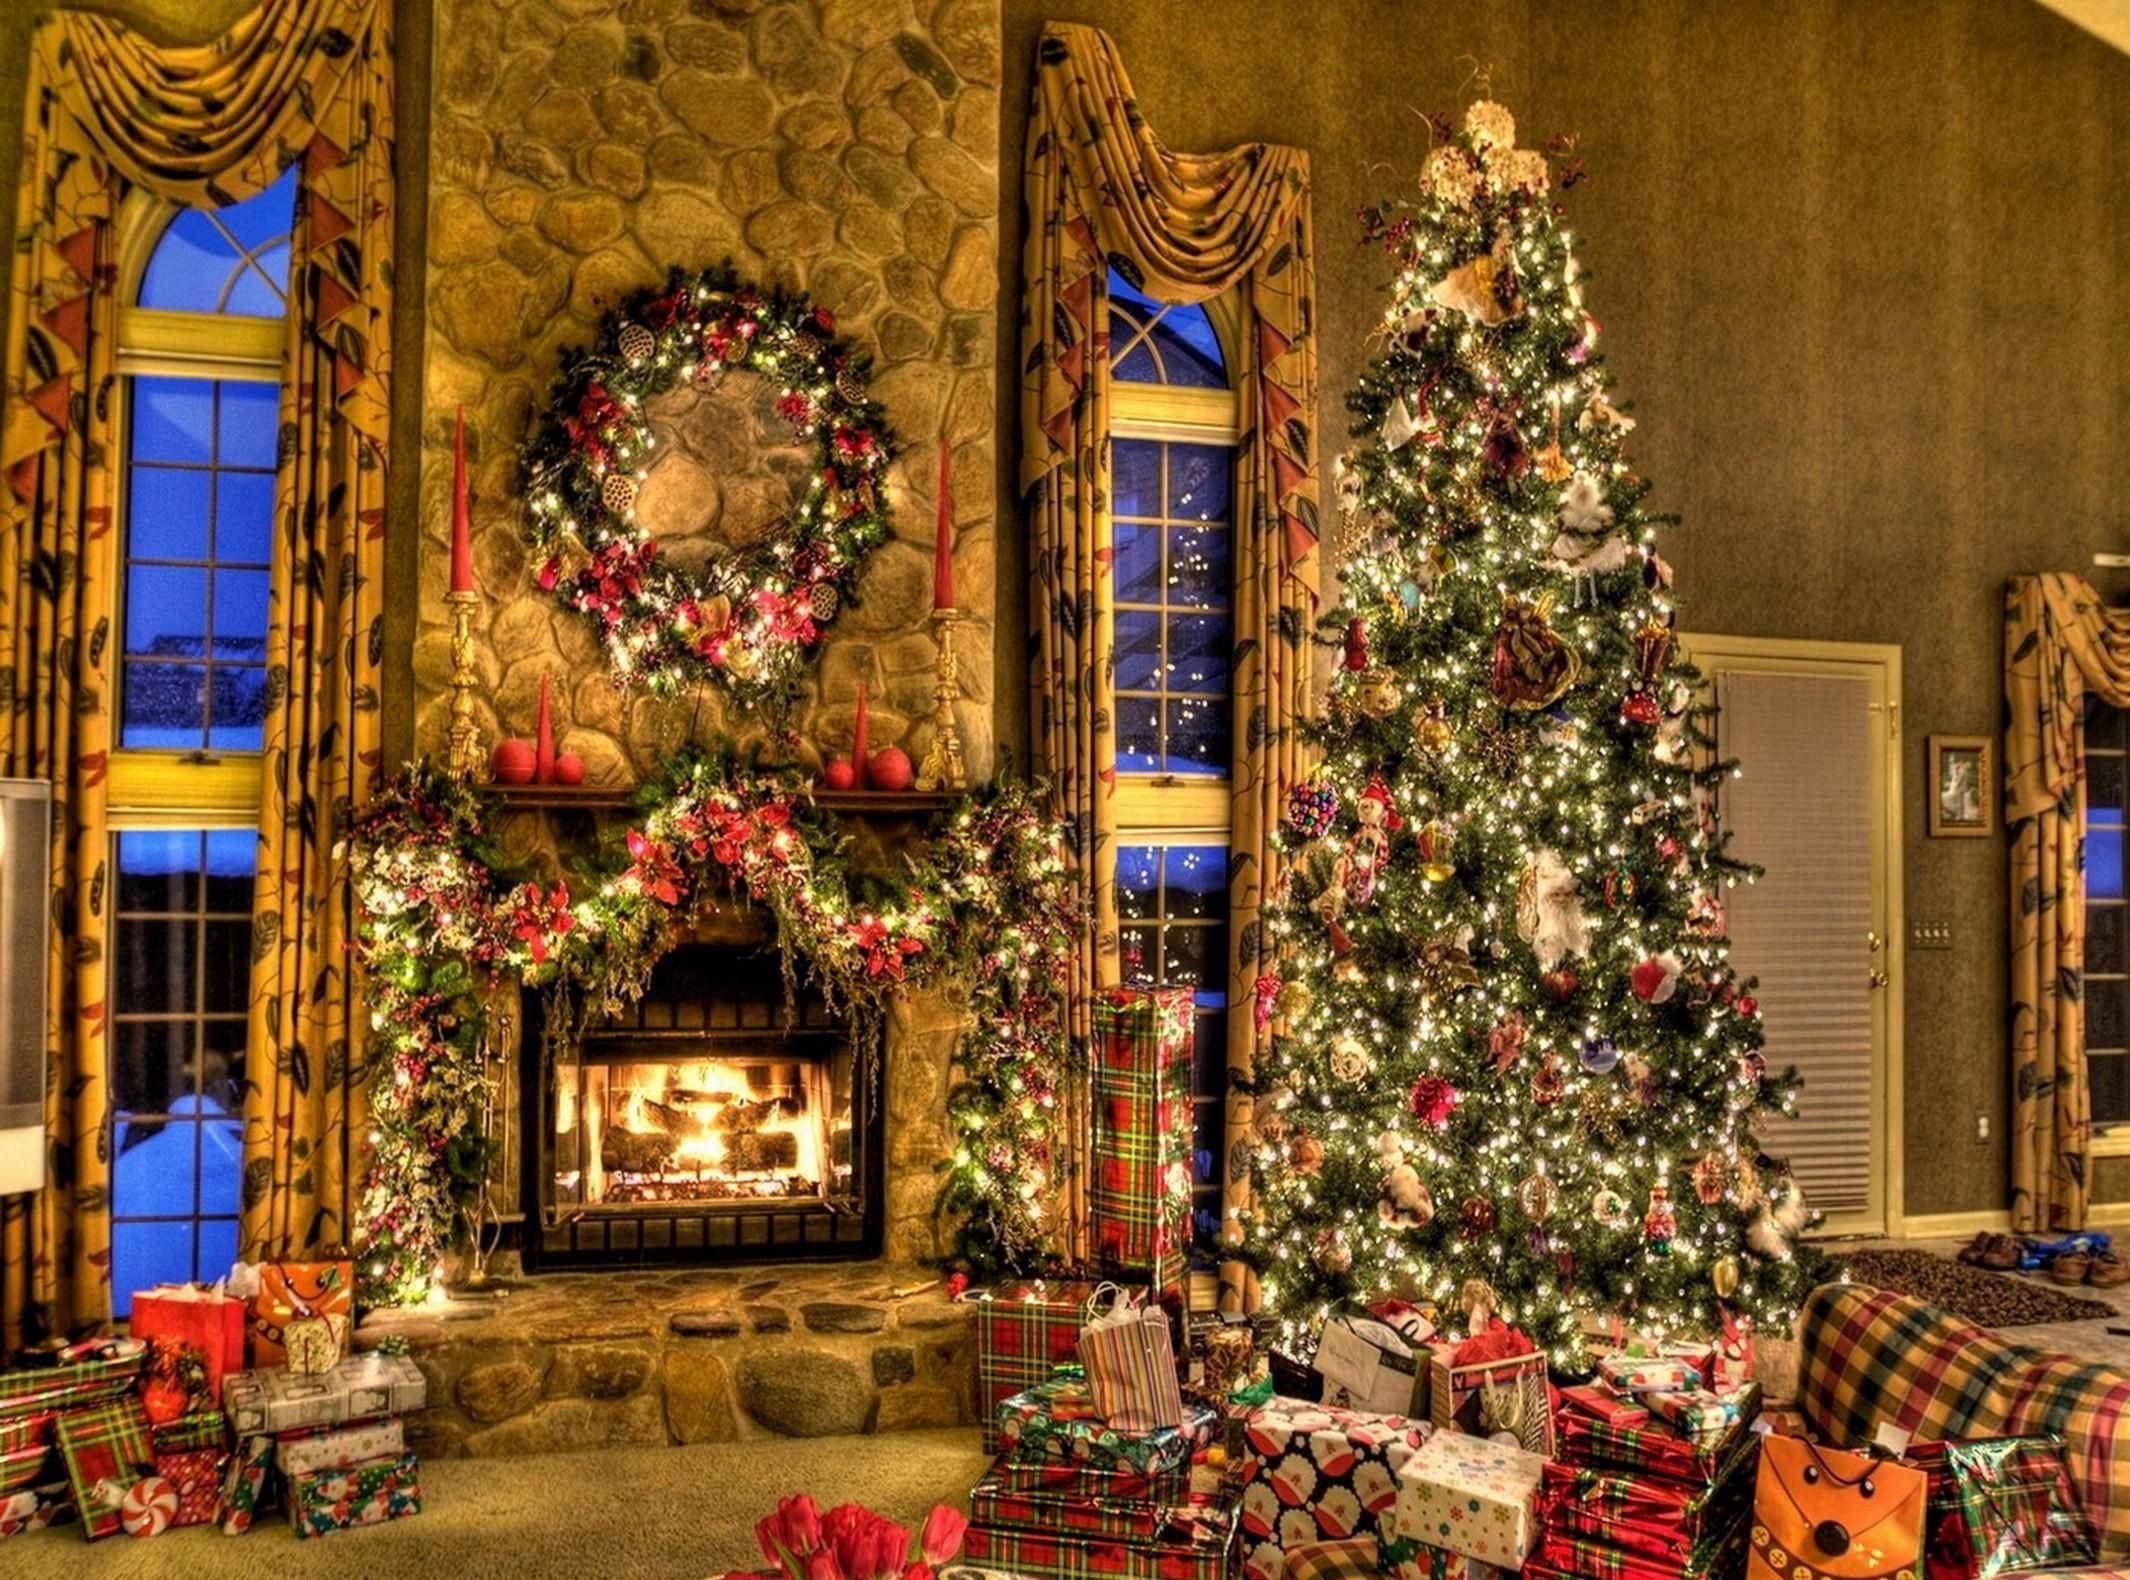 44] Christmas Tree And Fireplace Wallpapers on WallpaperSafari 2130x1580